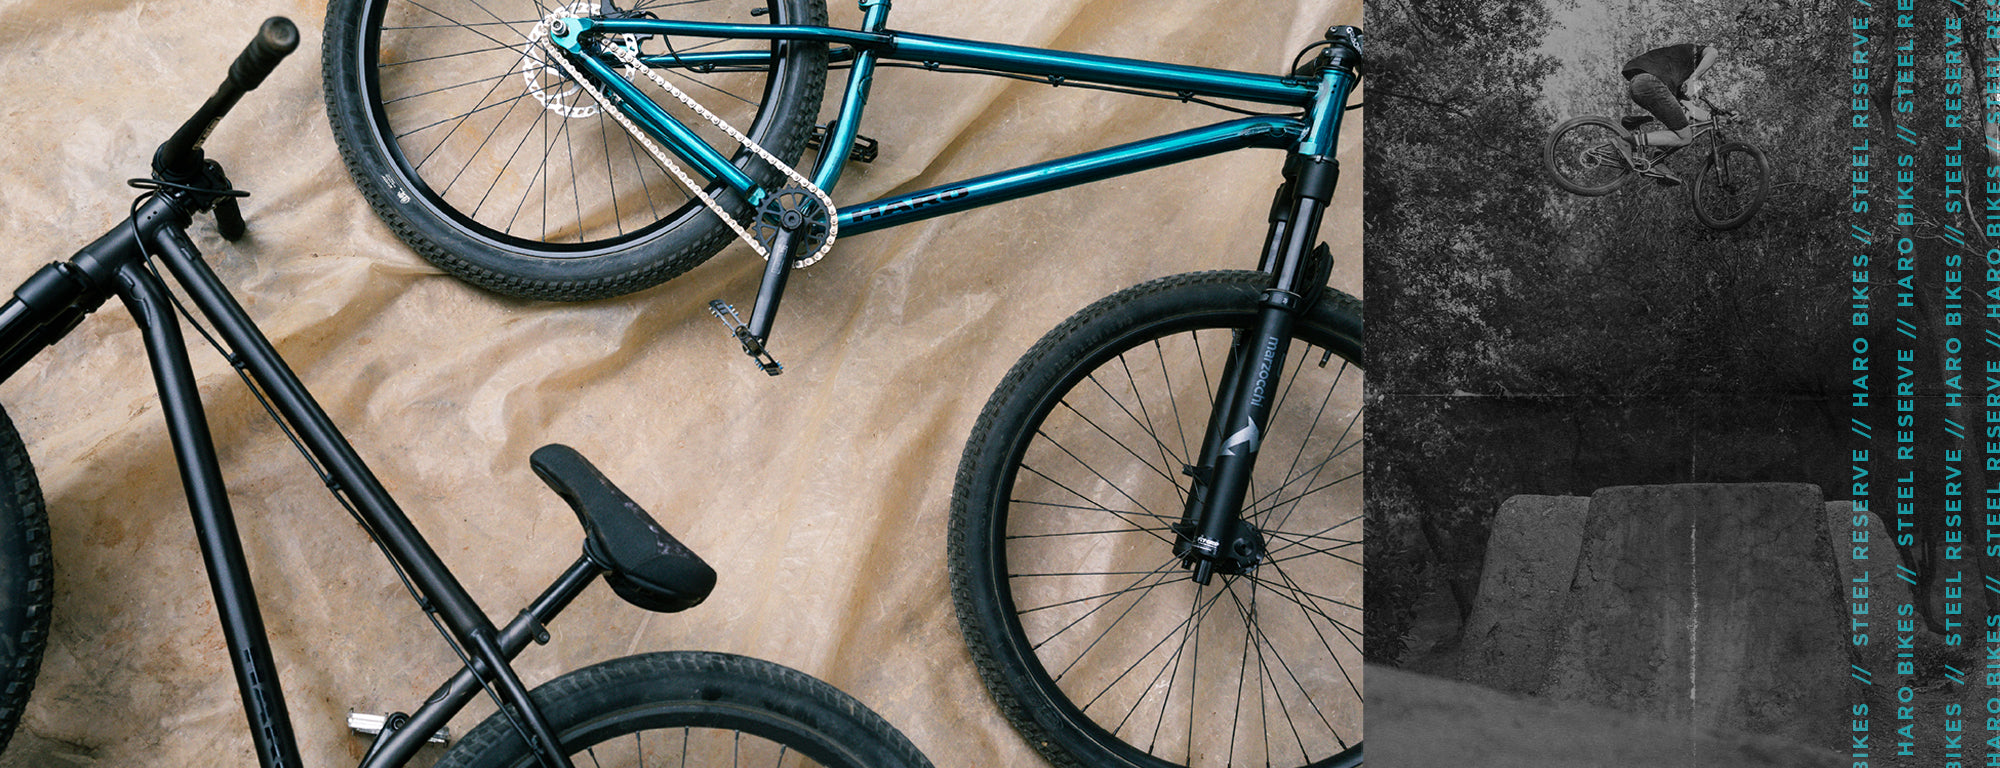 Reis geestelijke gezondheid maak het plat Dirt Jumper – Haro Bikes